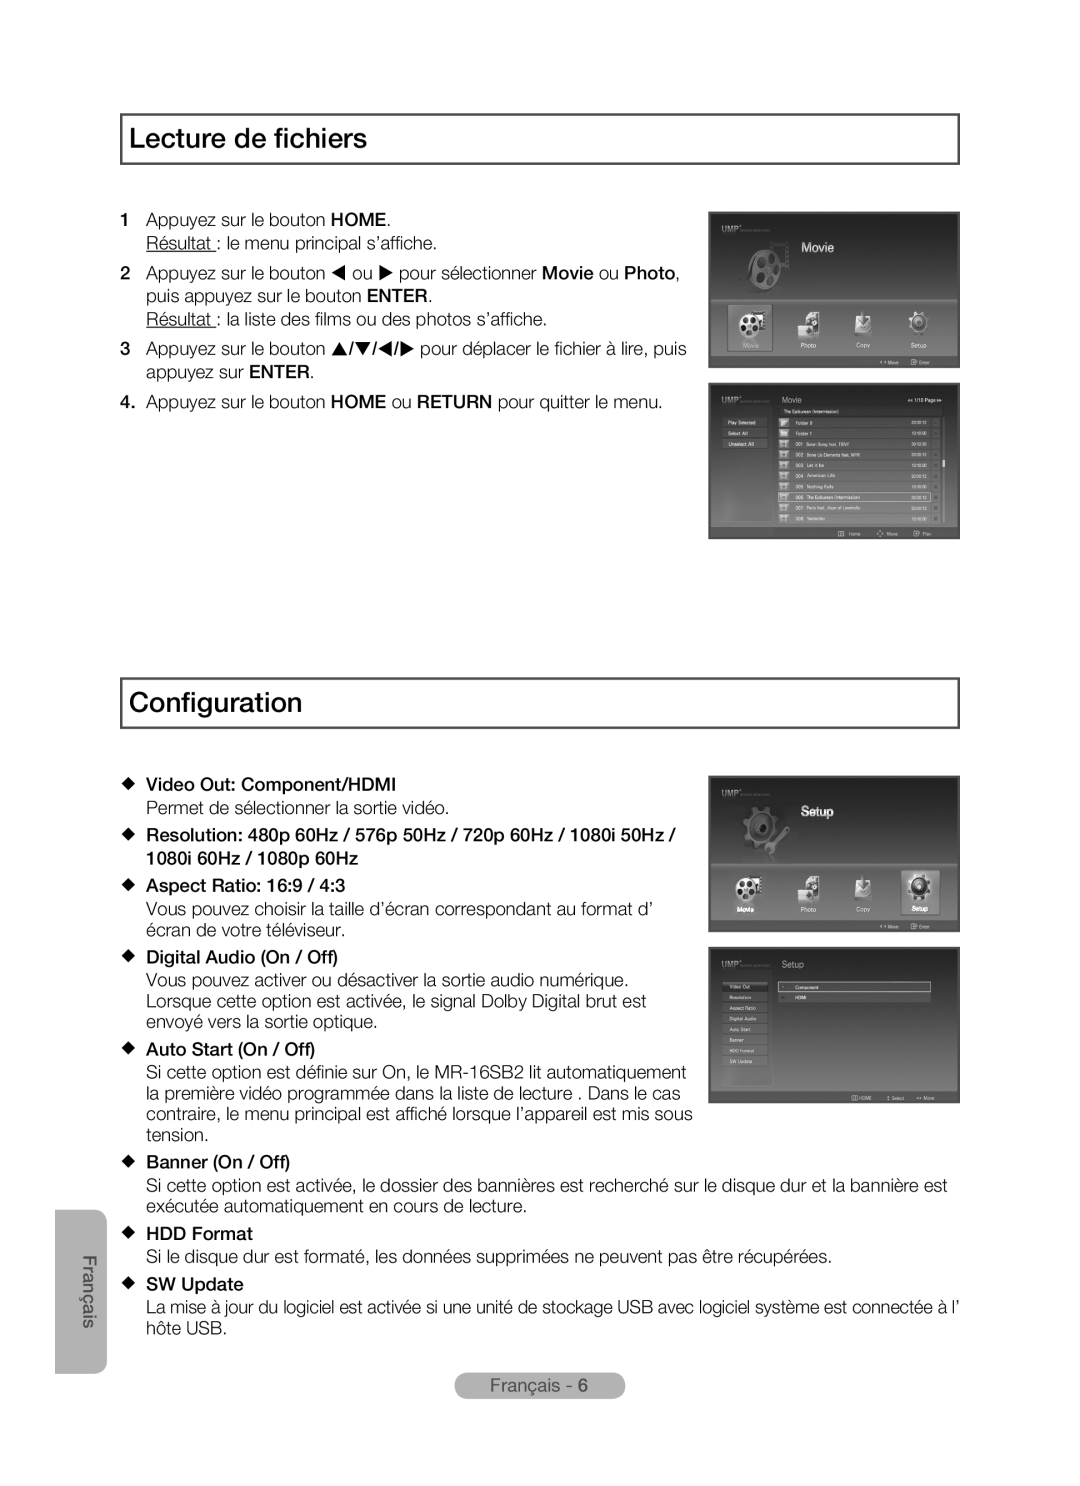 Samsung MR-16SB2 manual Lecture de fichiers, Configuration, Français 